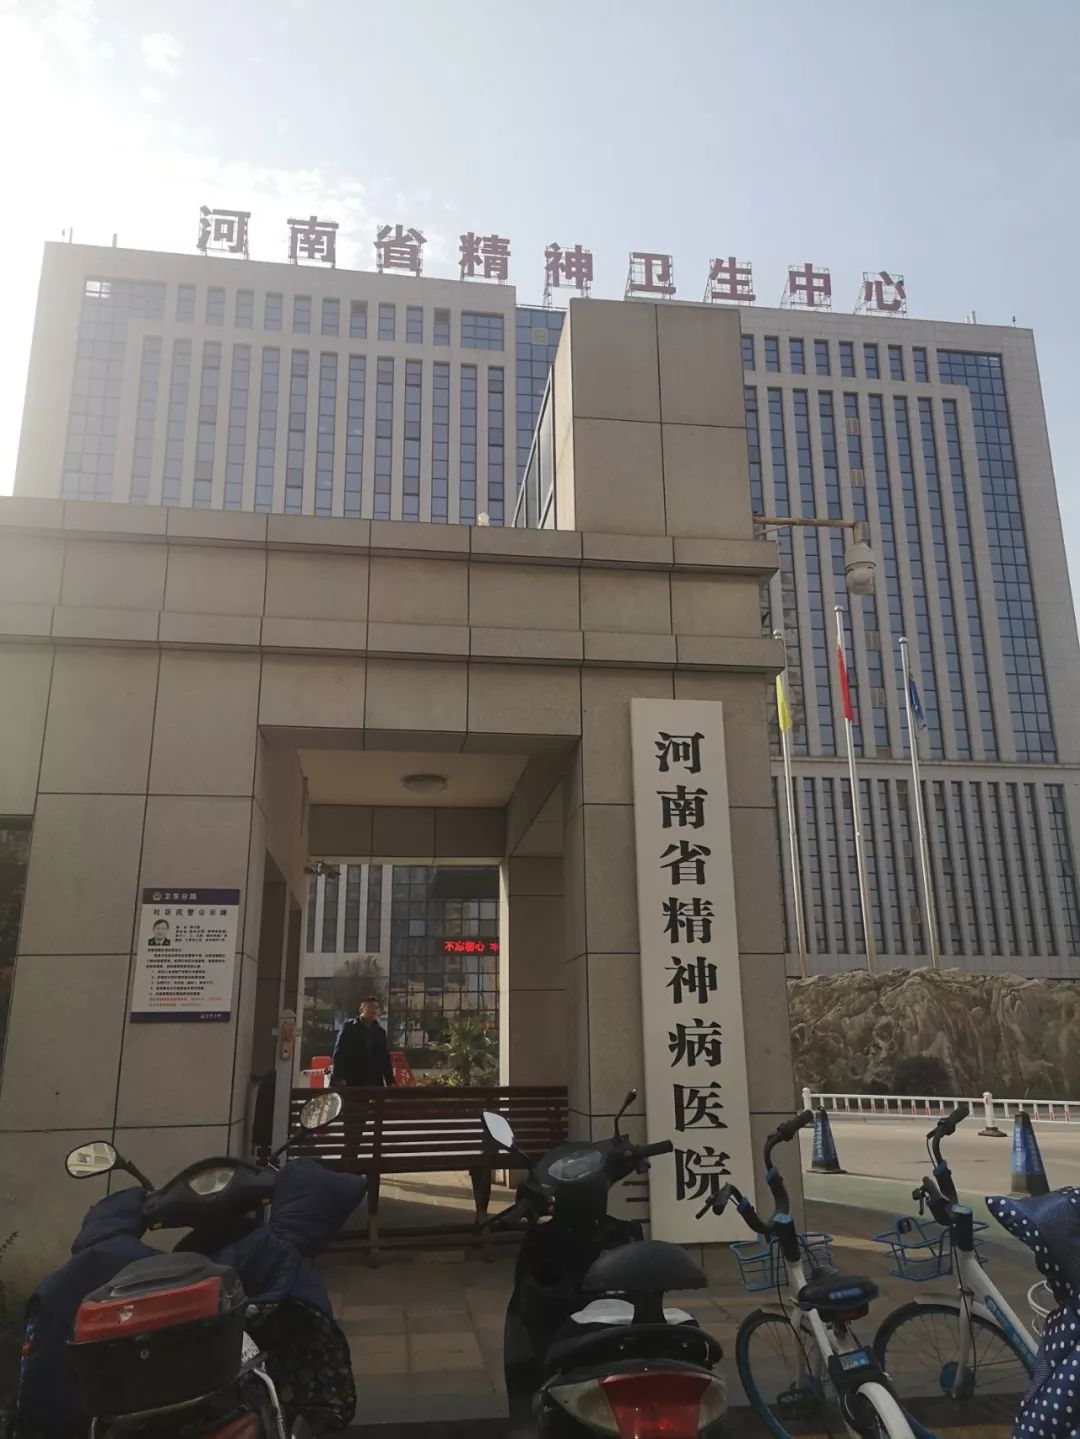  冯华在河南省精神病医院接受过治疗。新京报记者李桂 摄